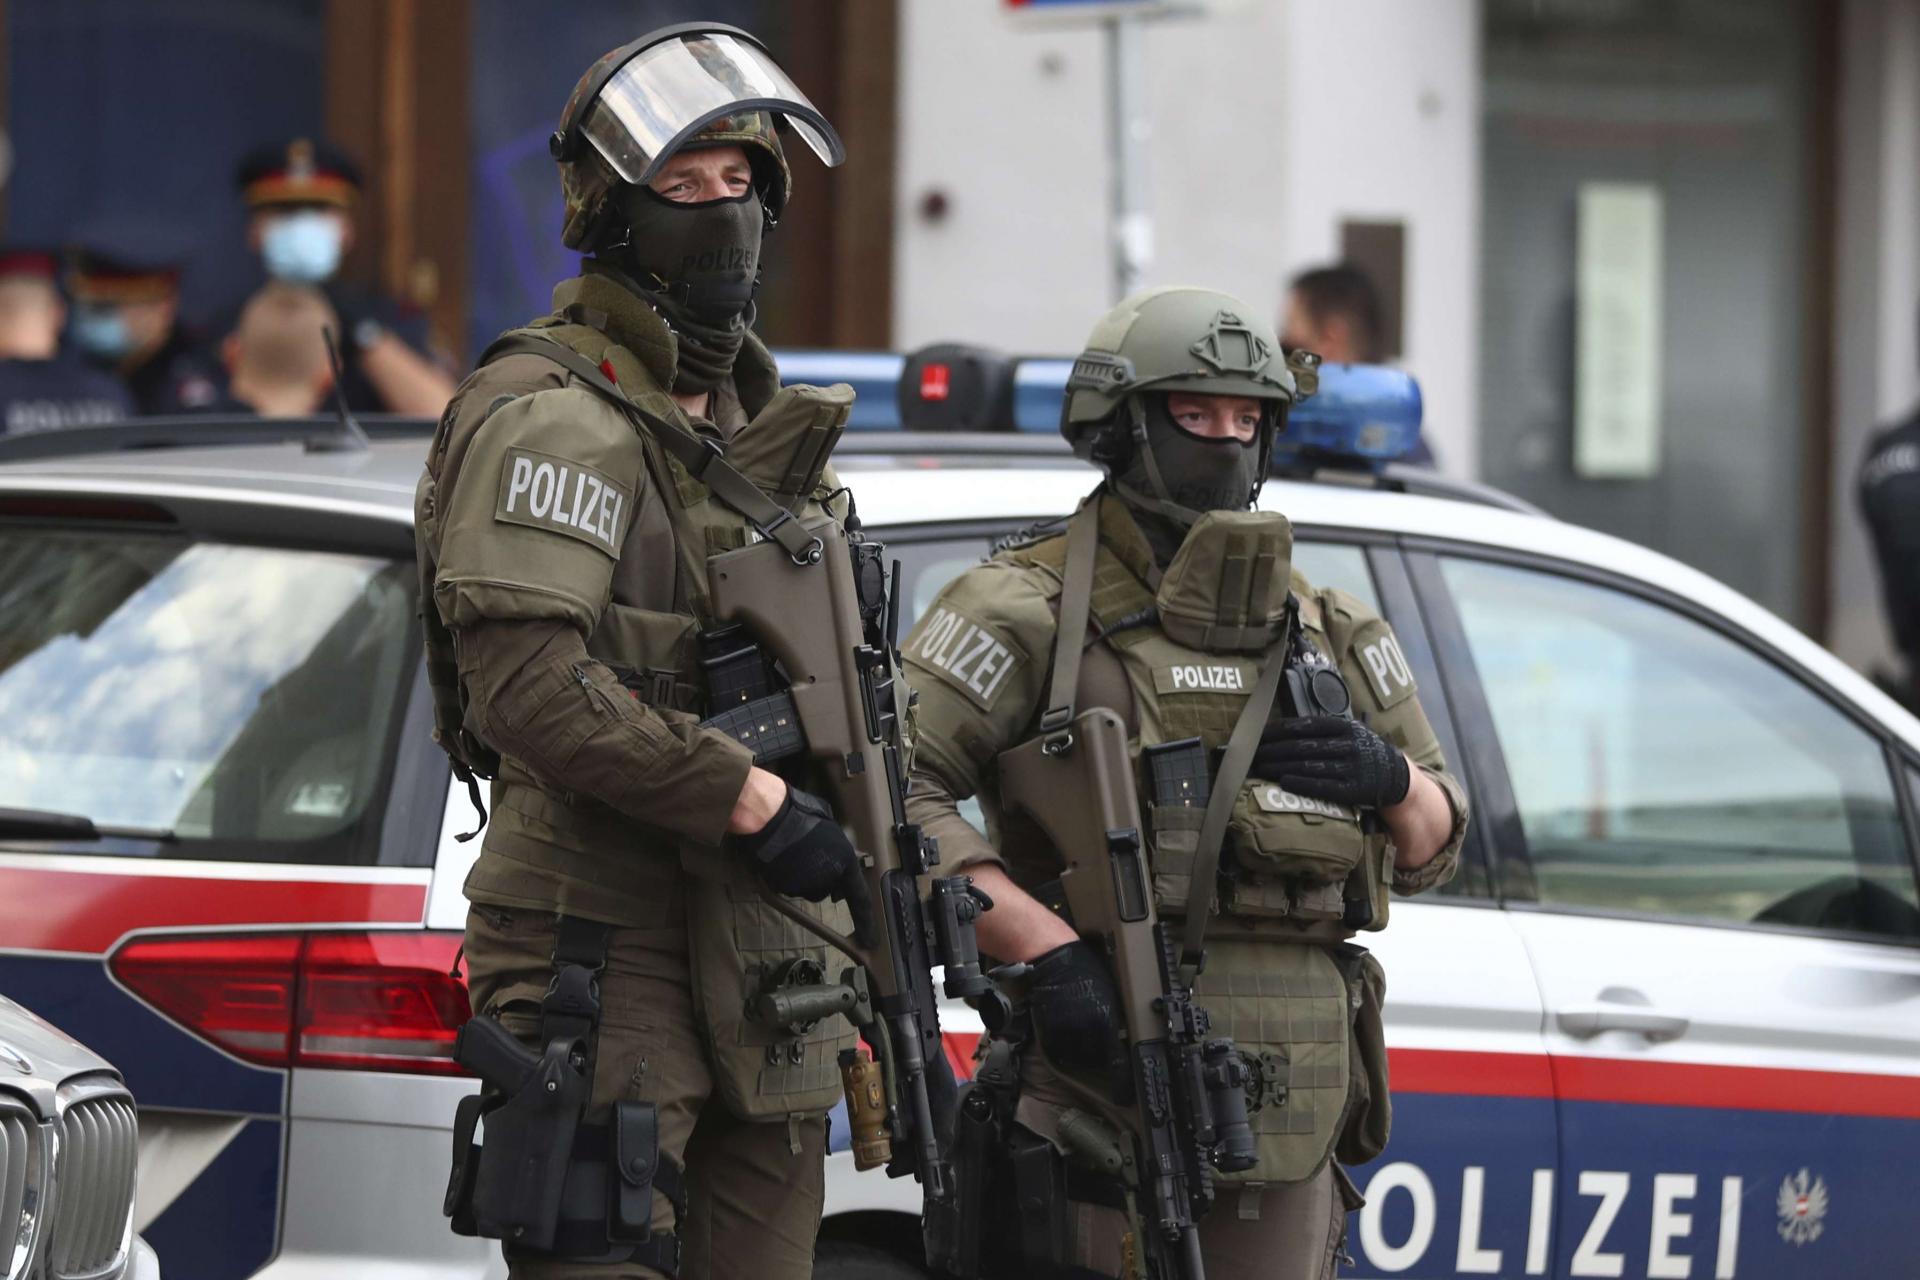 أوروبا في اهبة الاستعداد لمواجهة الخطر الارهابي وتداعياته